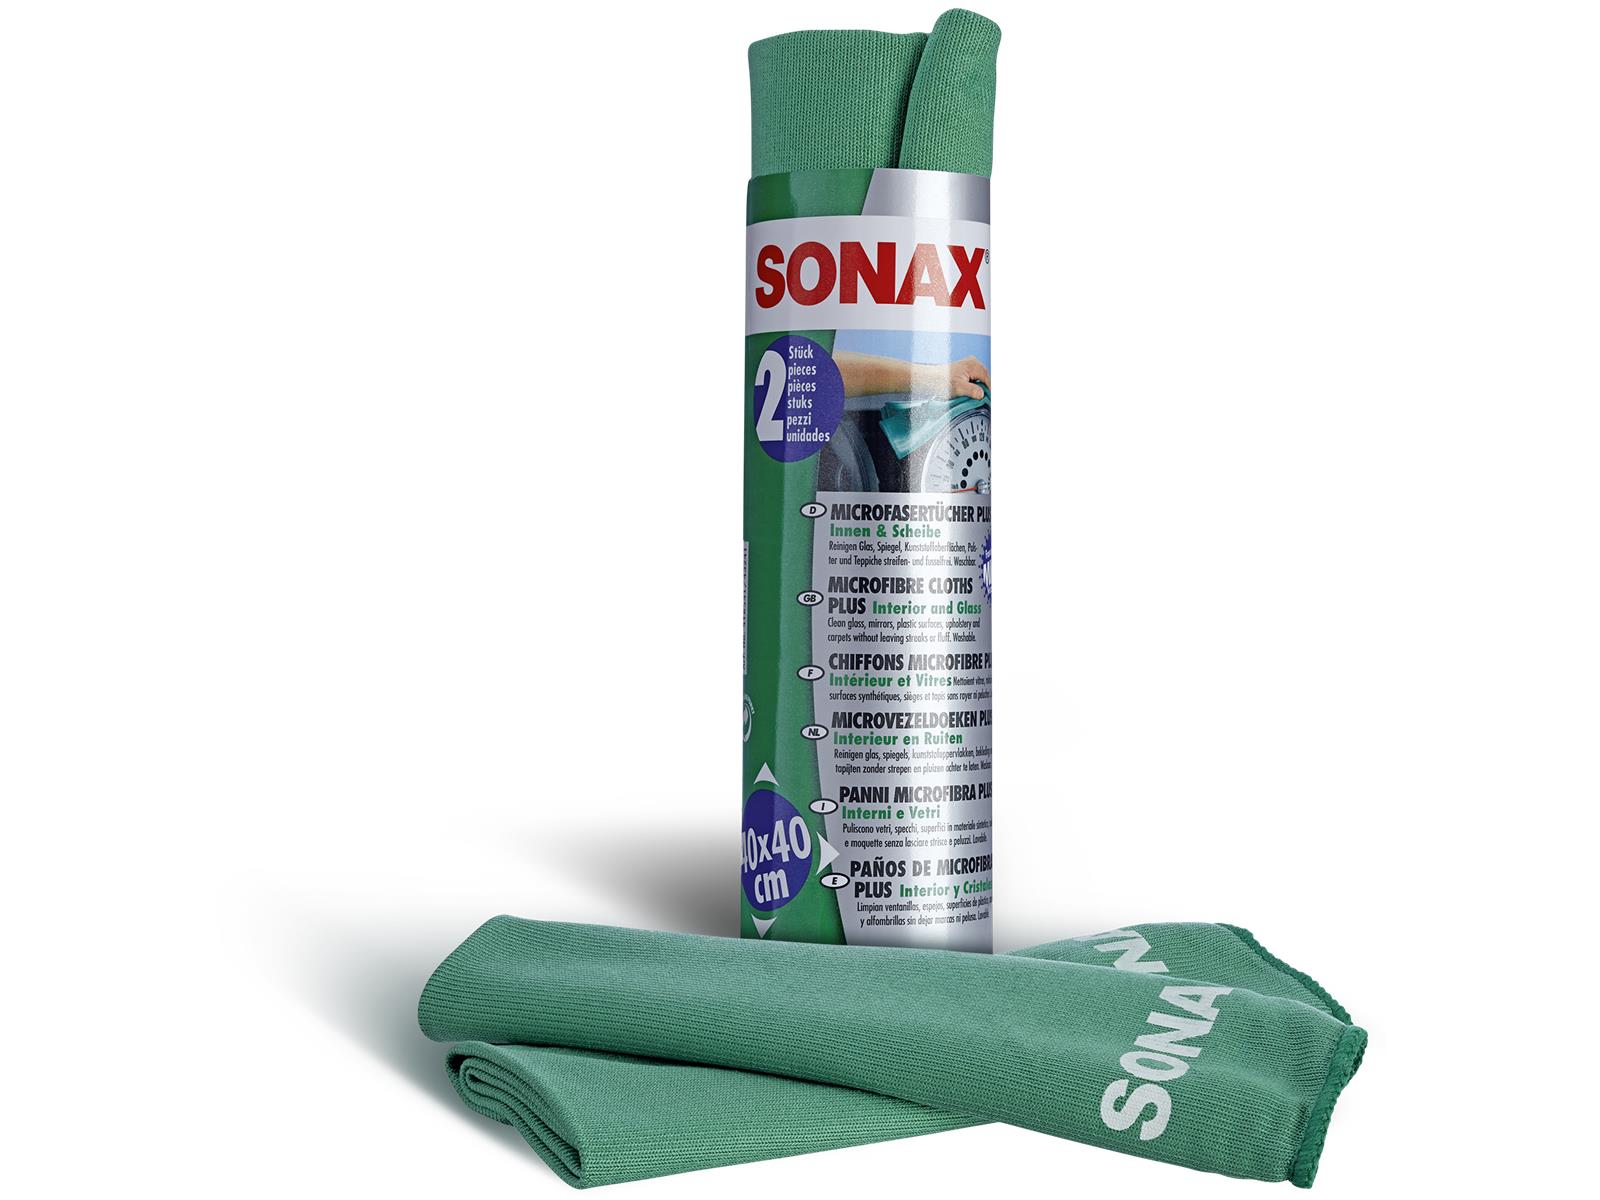 SONAX 04165410 MicrofaserTücher PLUS Innen & Scheibe (2 St.) 2 Stück